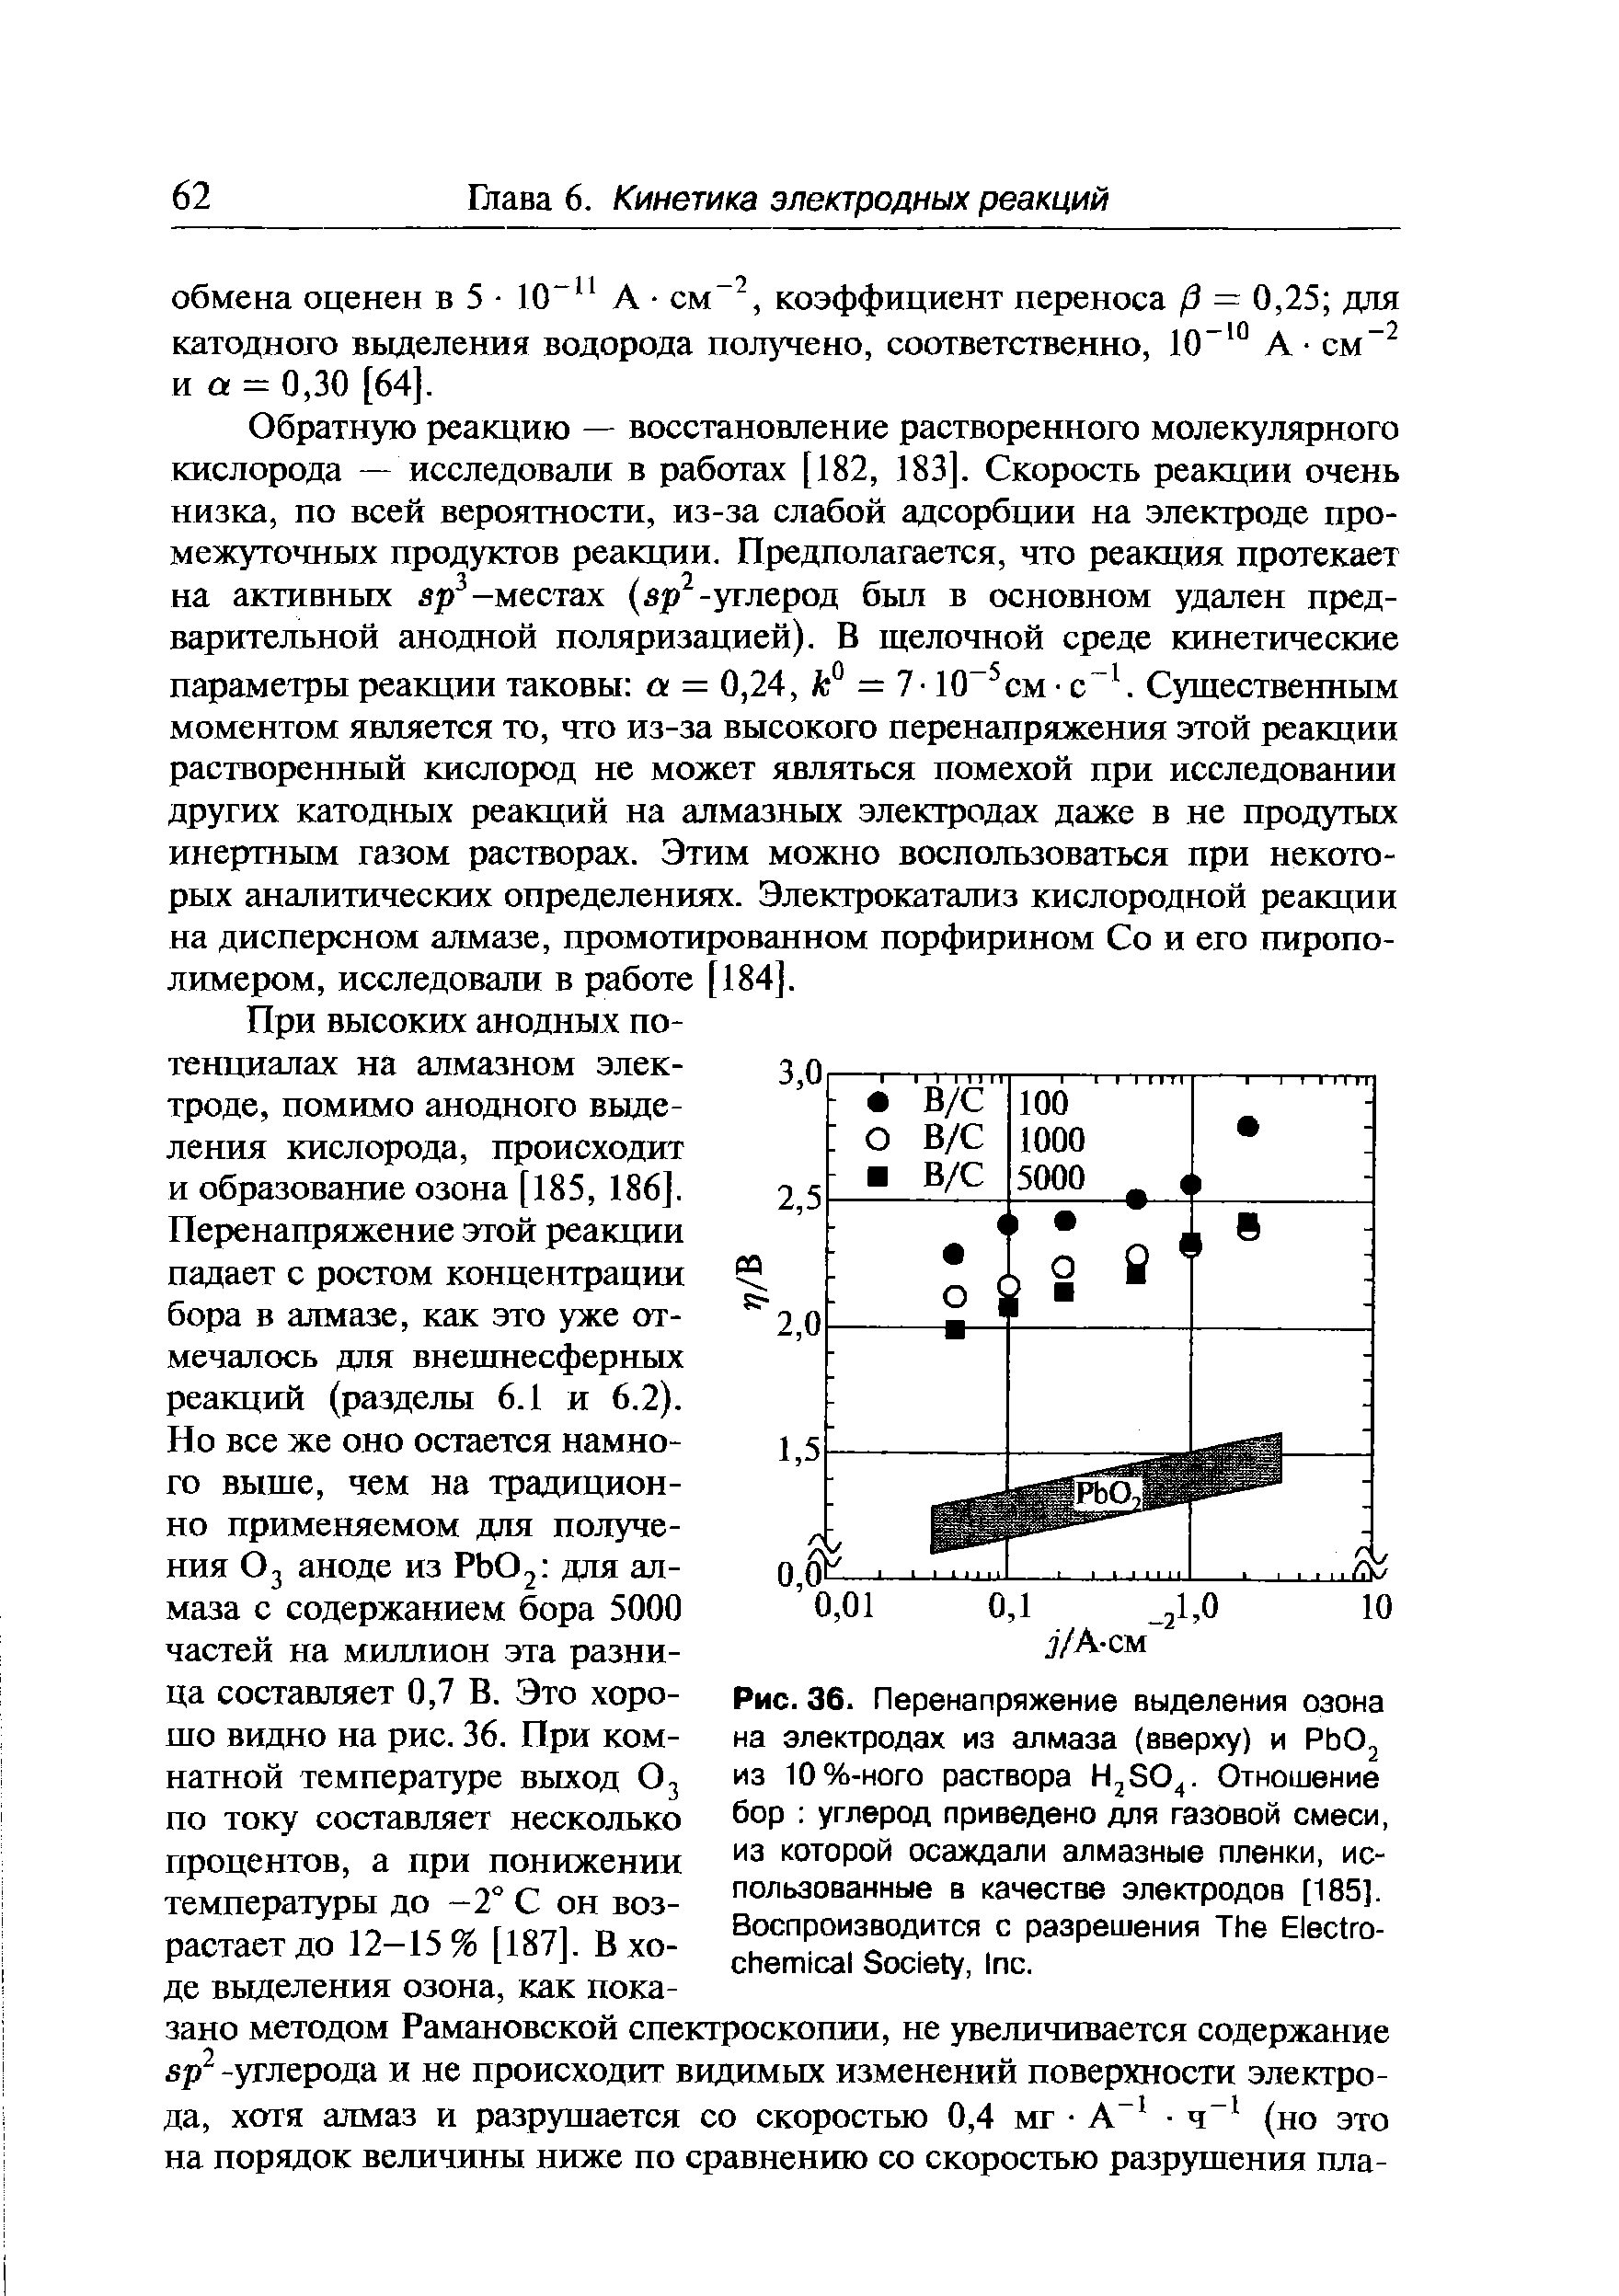 При высоких анодных потенциалах на алмазном элек- 3 Ор троде, помимо анодного выделения кислорода, происходит и образование озона [185, 186].